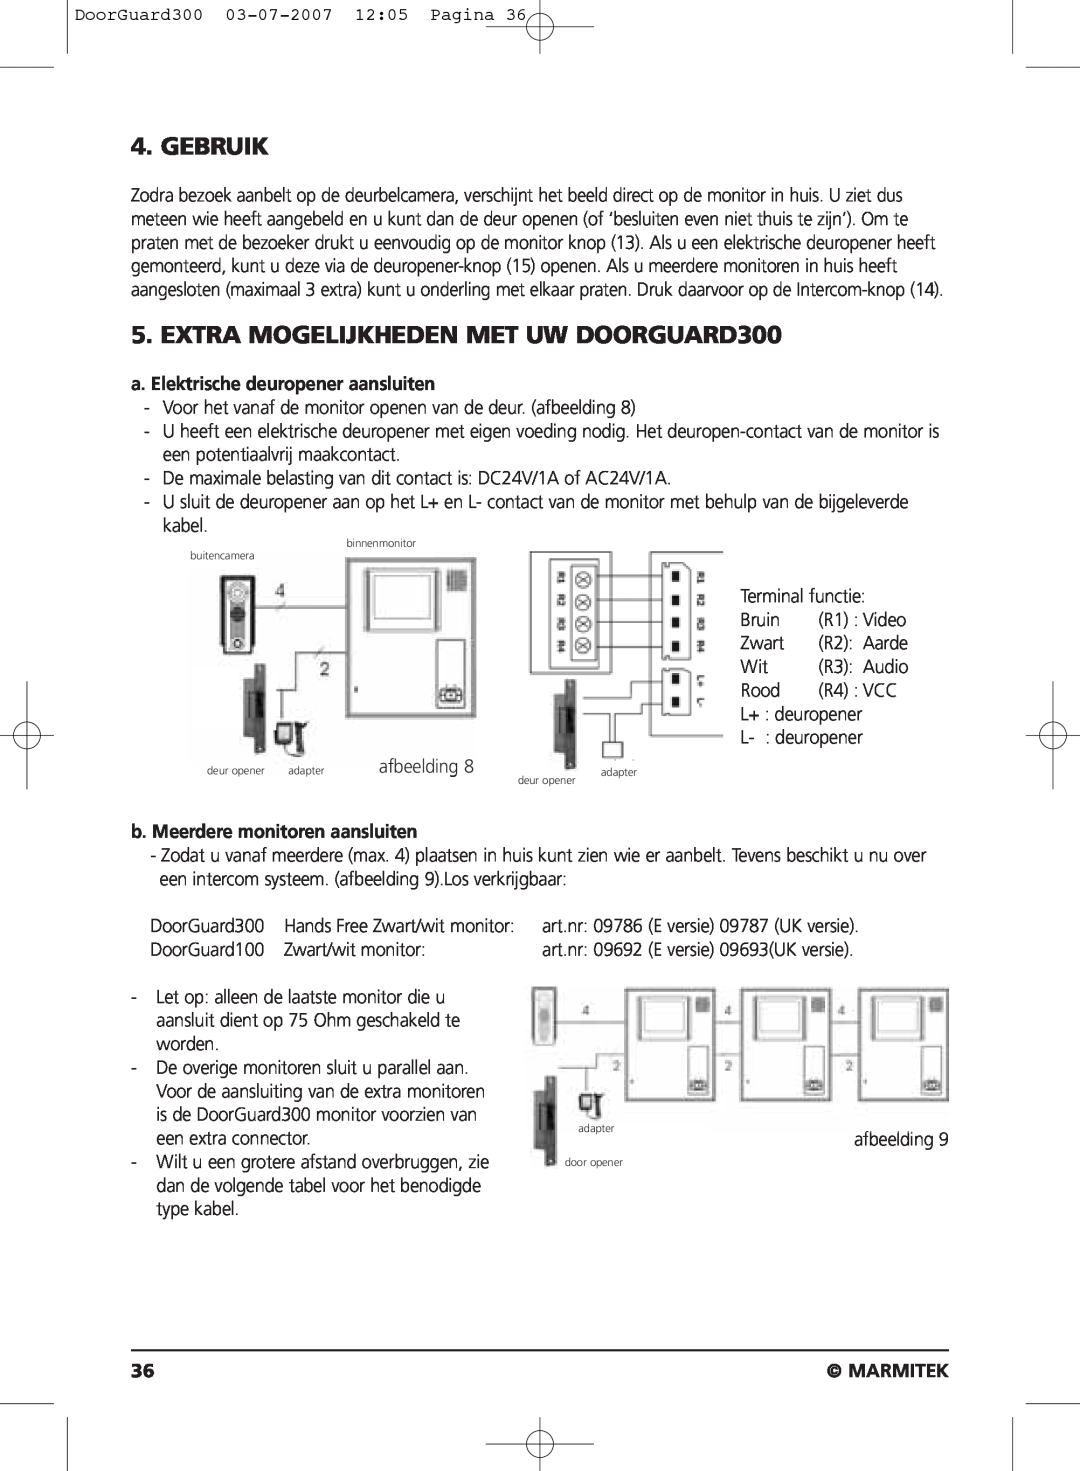 Marmitek DOORGUARD300TM Gebruik, EXTRA MOGELIJKHEDEN MET UW DOORGUARD300, a. Elektrische deuropener aansluiten, Marmitek 